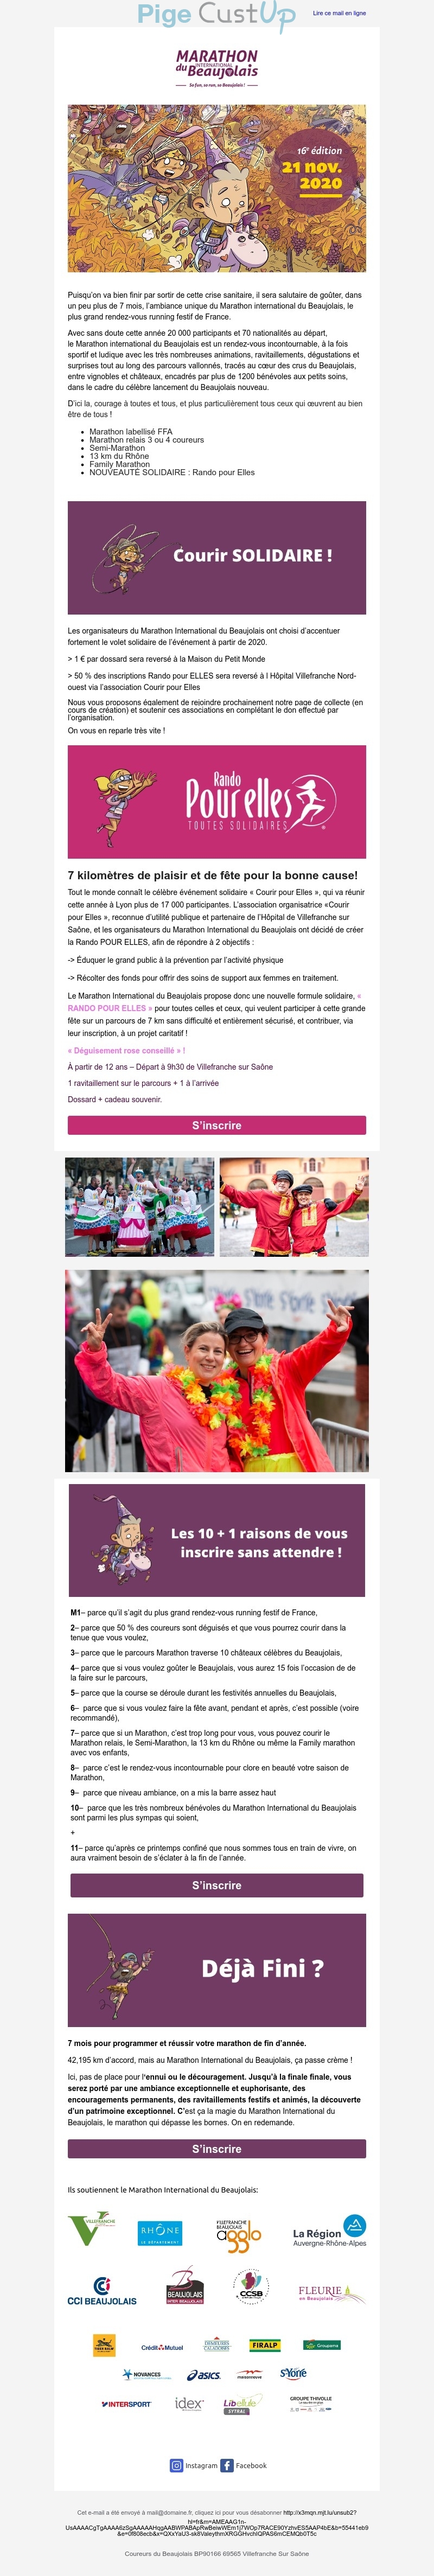 Exemple de Type de media  e-mailing - Marathon International du Beaujolais - Marketing relationnel - Evénement